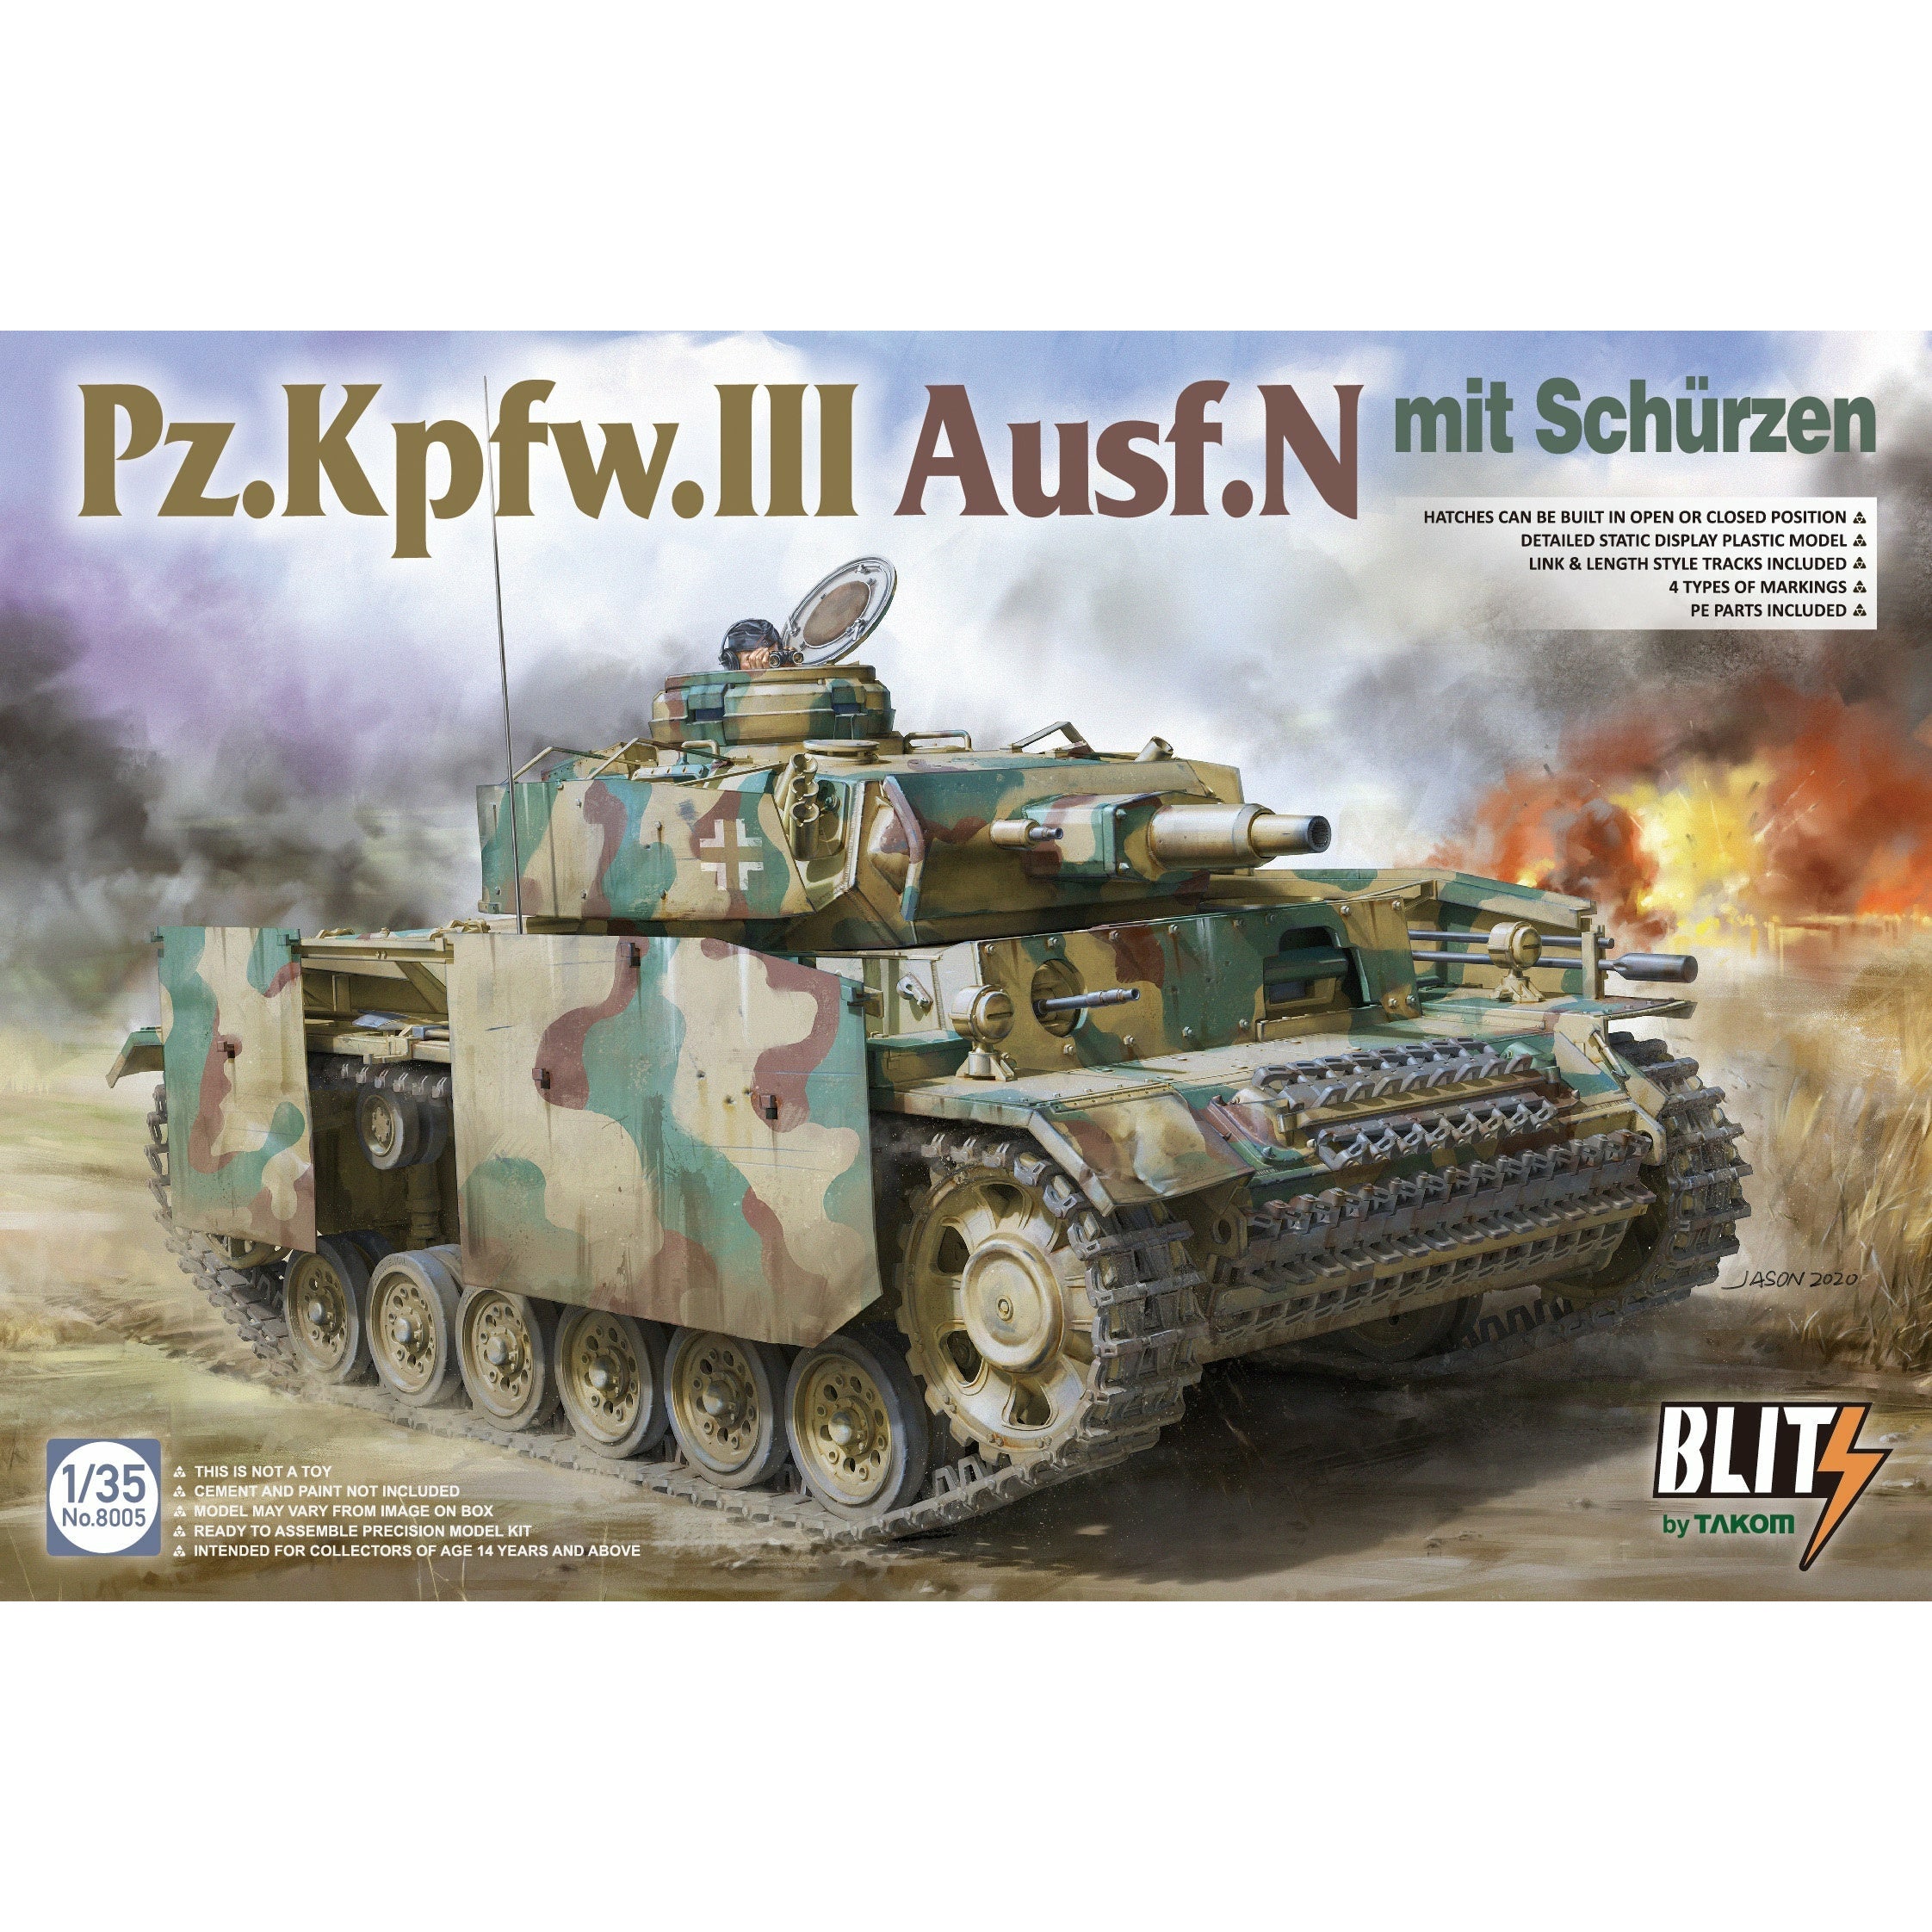 PZ.KPFW.III Ausf.N Mit Schurzen 1/35 Blitz Series #8005 by Takom